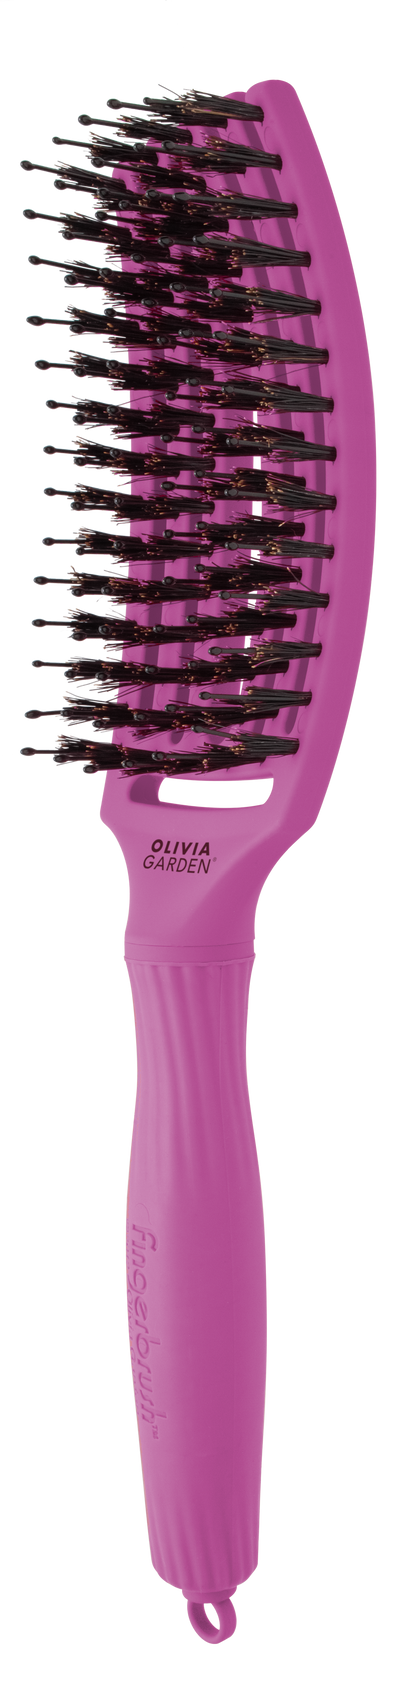 Olivia Garden Finger Brush Rosa